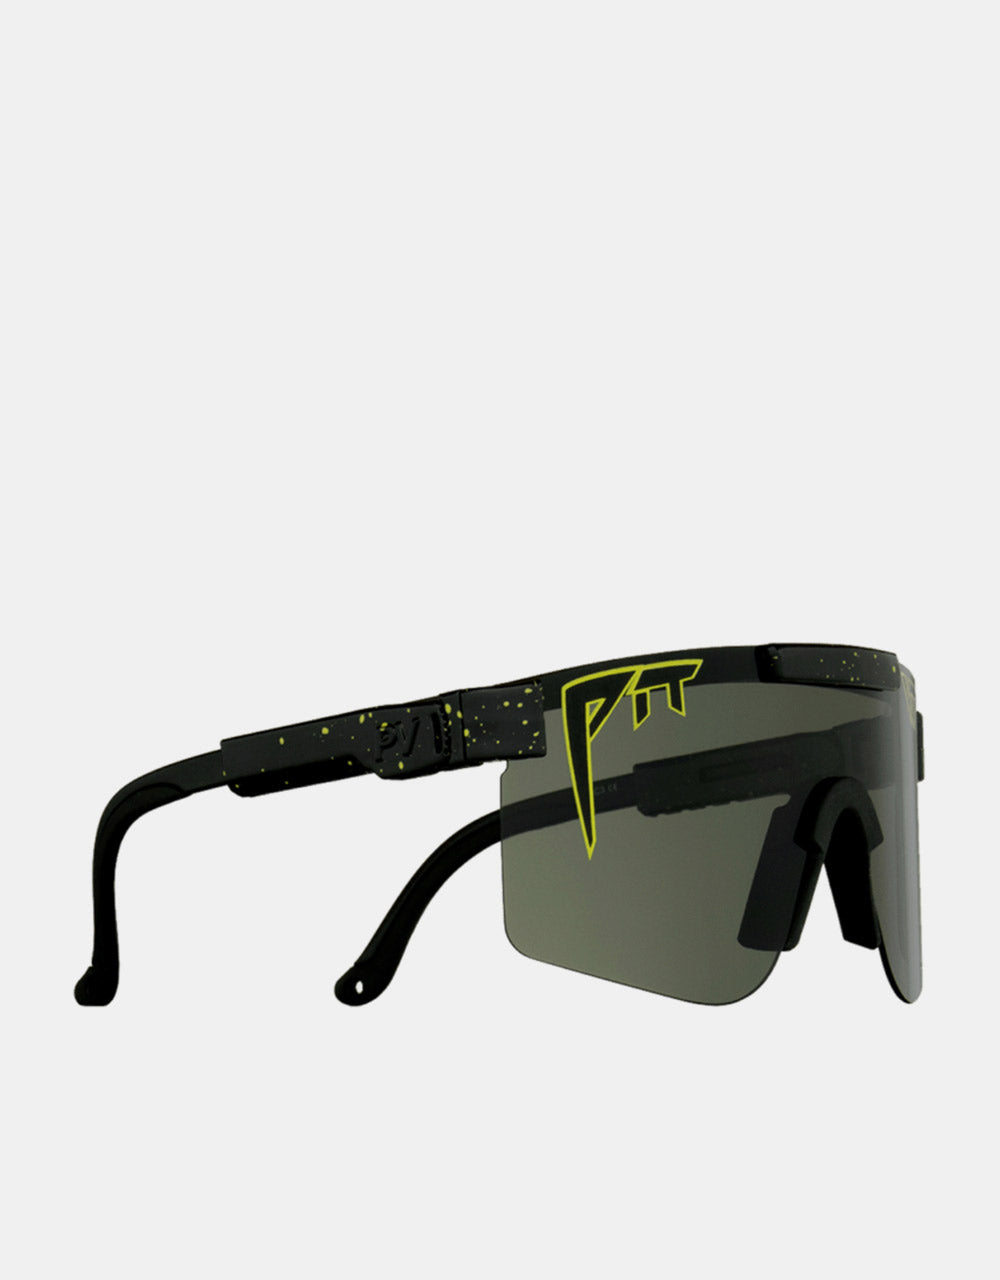 Pit Viper Cosmos Sunglasses - Smoke